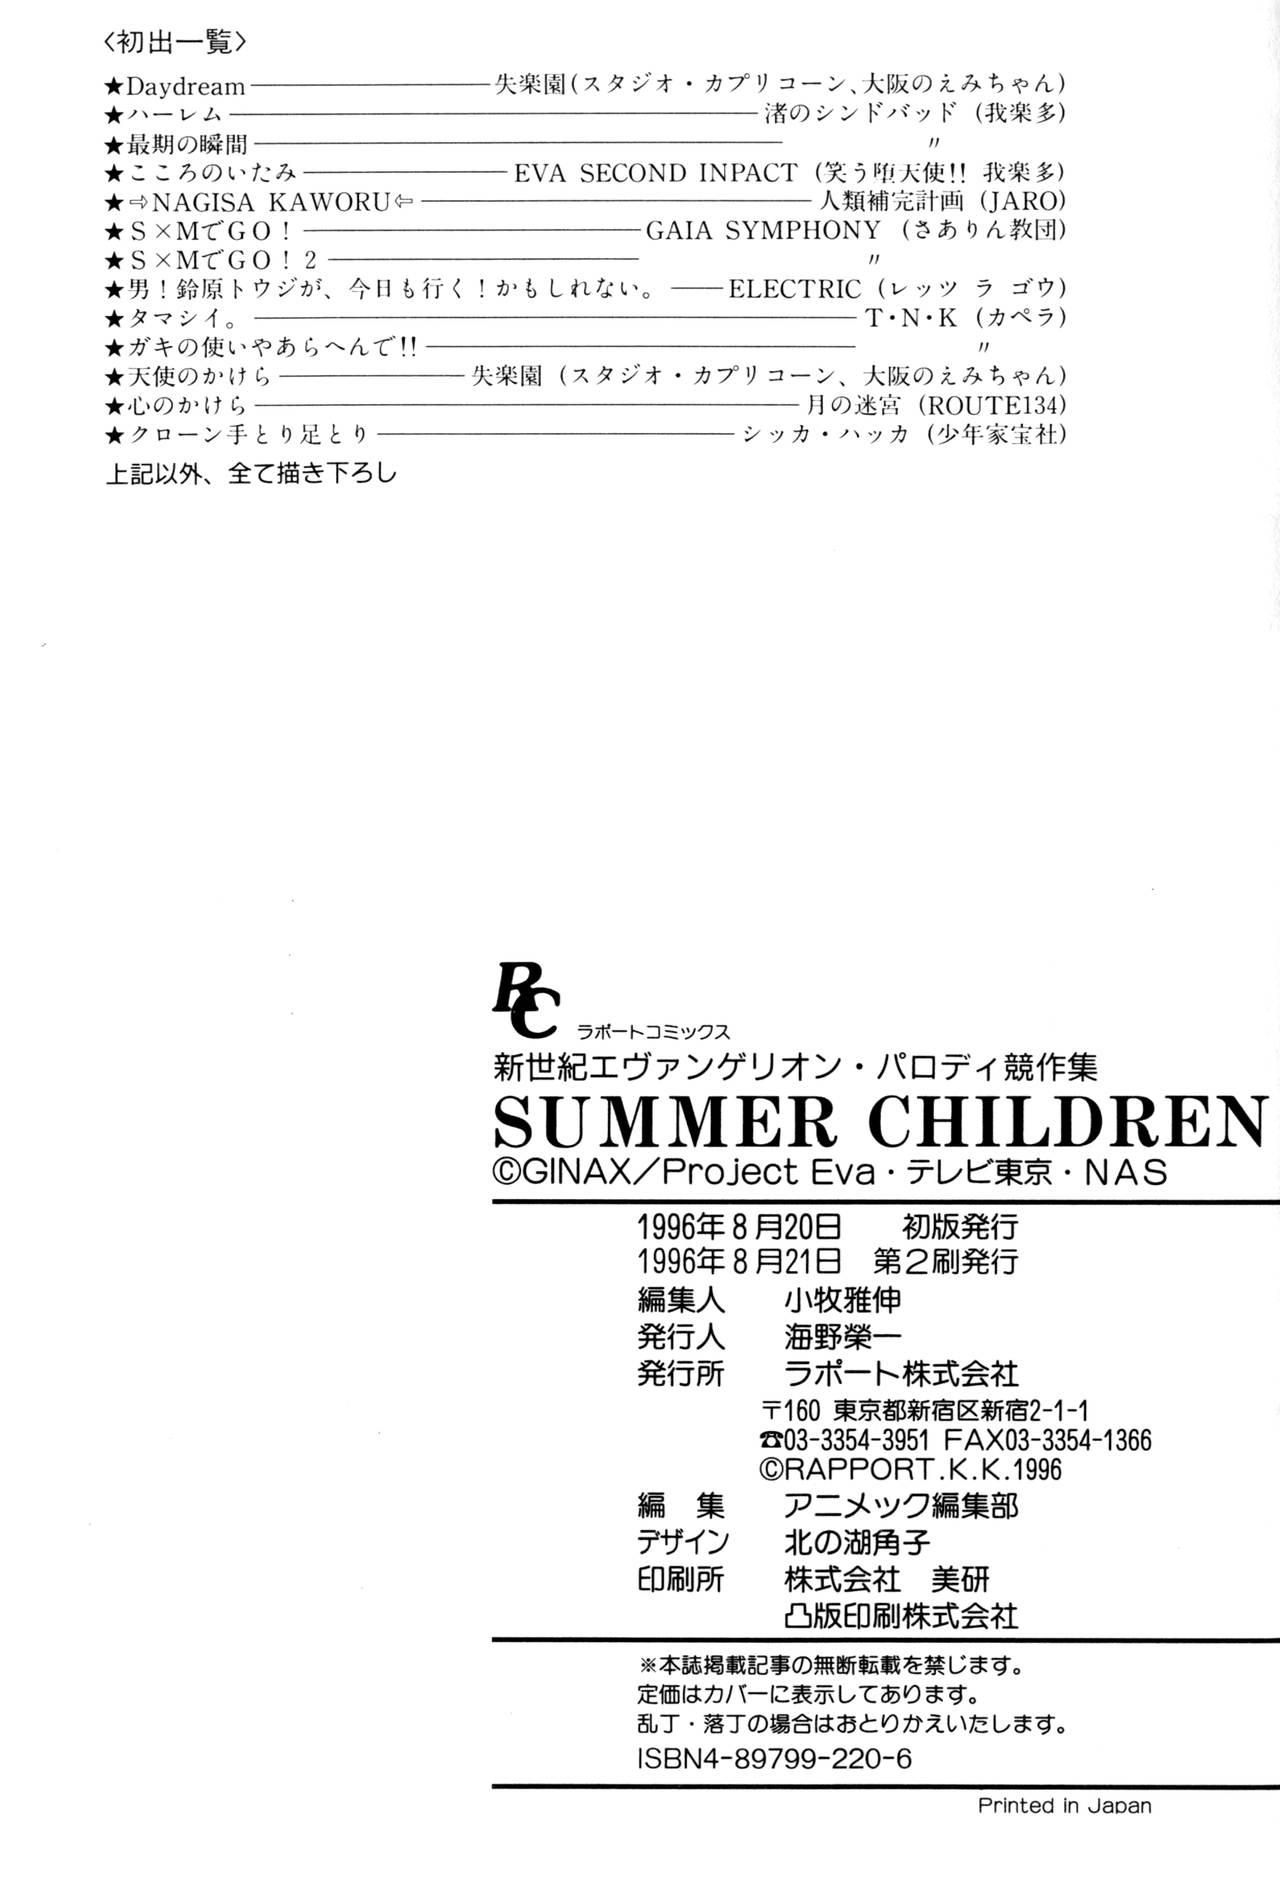 SUMMER CHILDREN 195